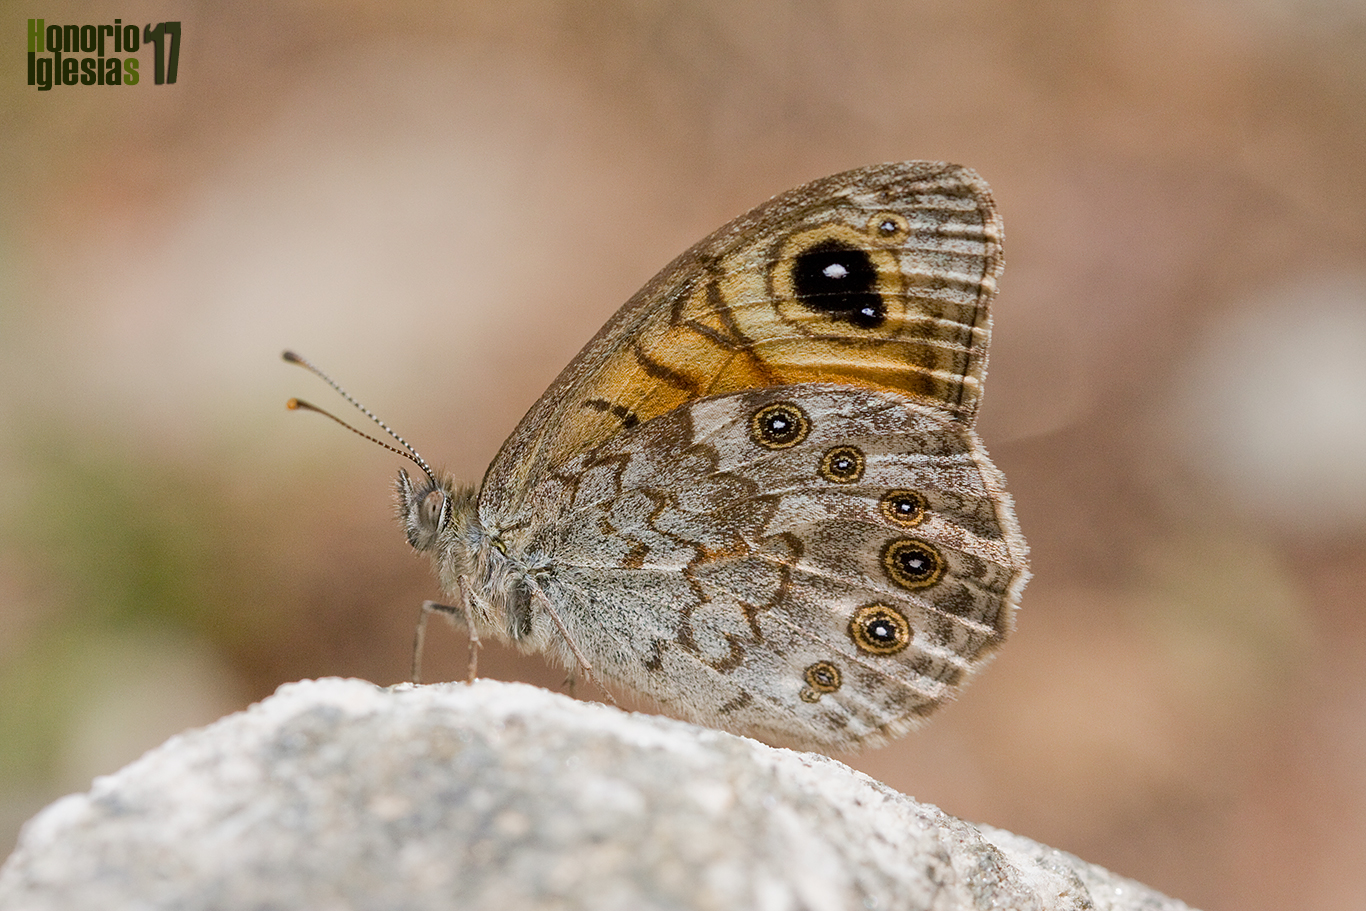 Ejemplar de mariposa pedregosa (Lasiommata maera) mostrando su reverso alar, en esta especie es común que el ocelo del ala anterior esté doblemente pupilado de blanco